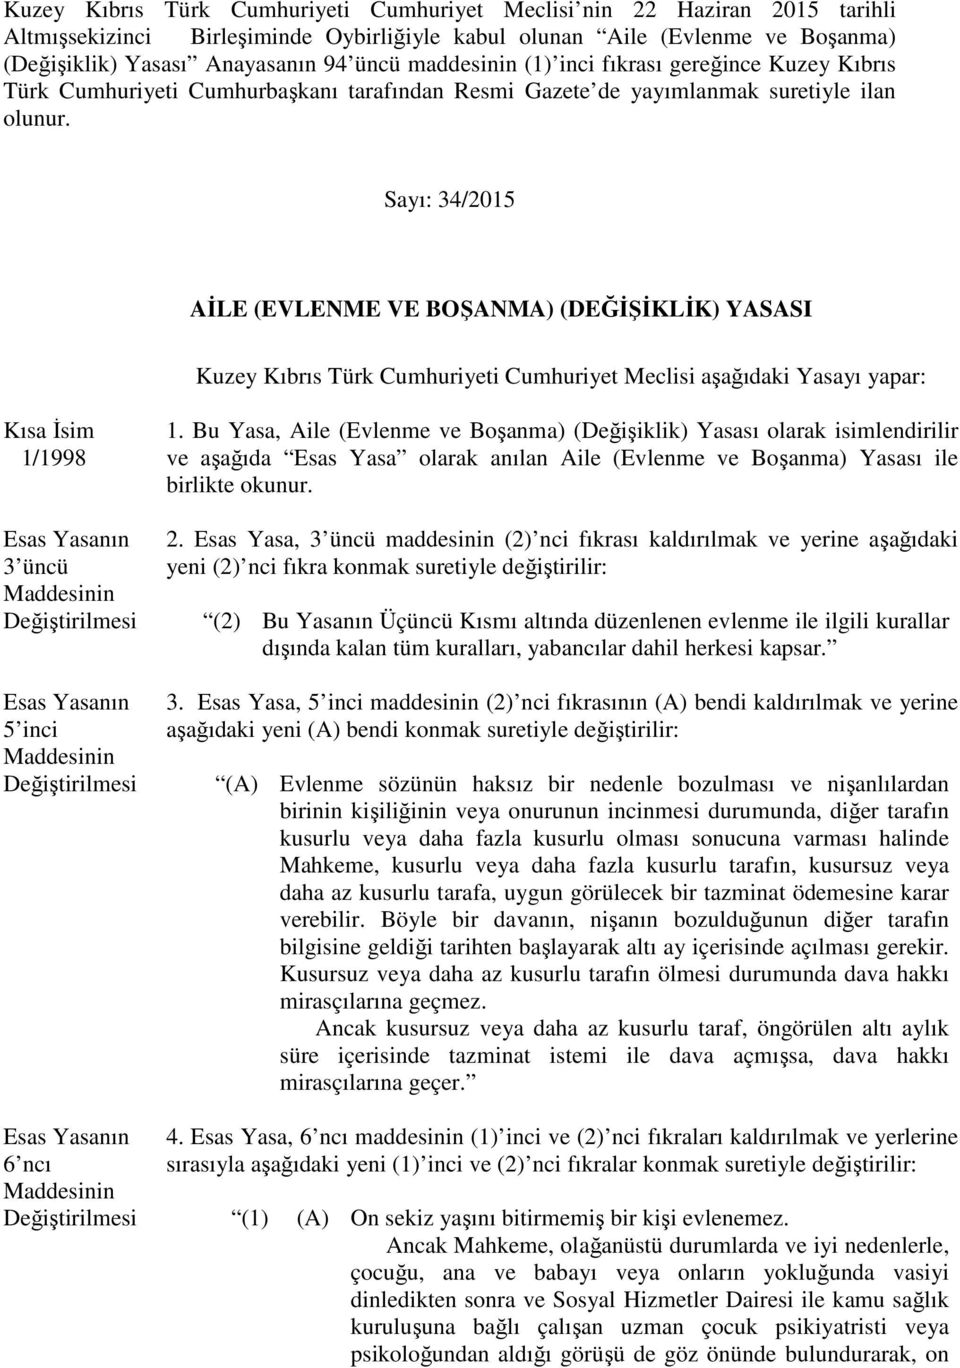 Sayı: 34/2015 AİLE (EVLENME VE BOŞANMA) (DEĞİŞİKLİK) YASASI Kuzey Kıbrıs Türk Cumhuriyeti Cumhuriyet Meclisi aşağıdaki Yasayı yapar: Kısa İsim 1/1998 3 üncü 5 inci 1.